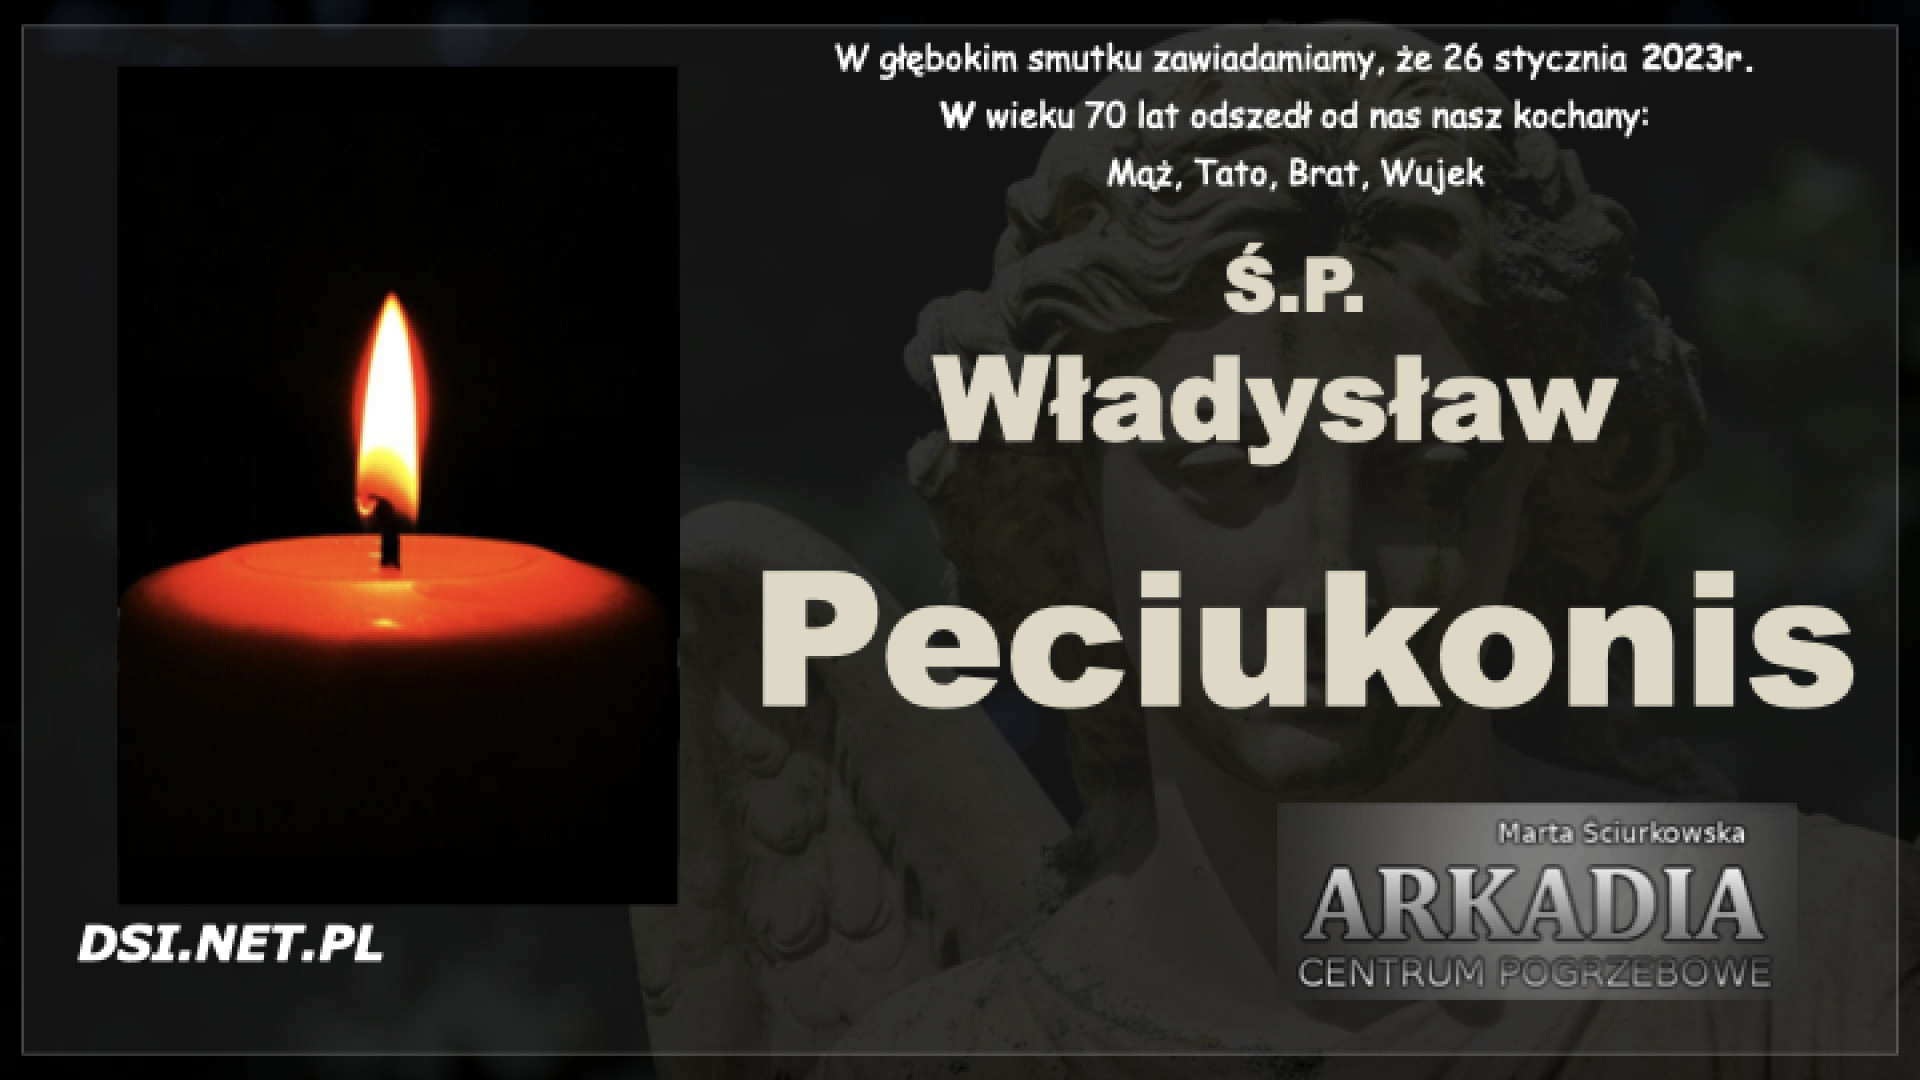 Ś.P. Władysław Peciukonis